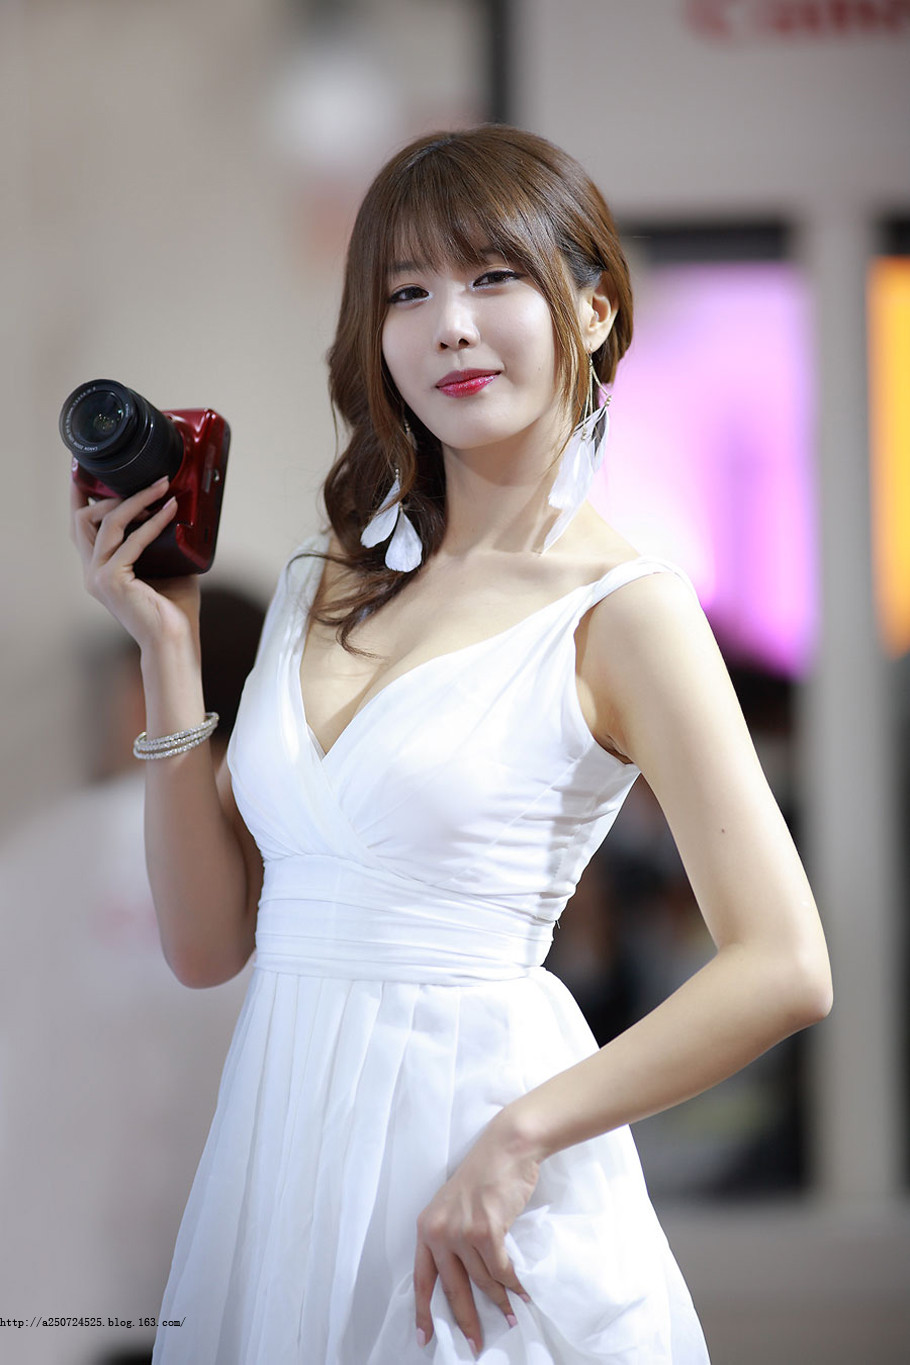 韩国美女车模一袭白裙美女下部私密的图片无遮挡